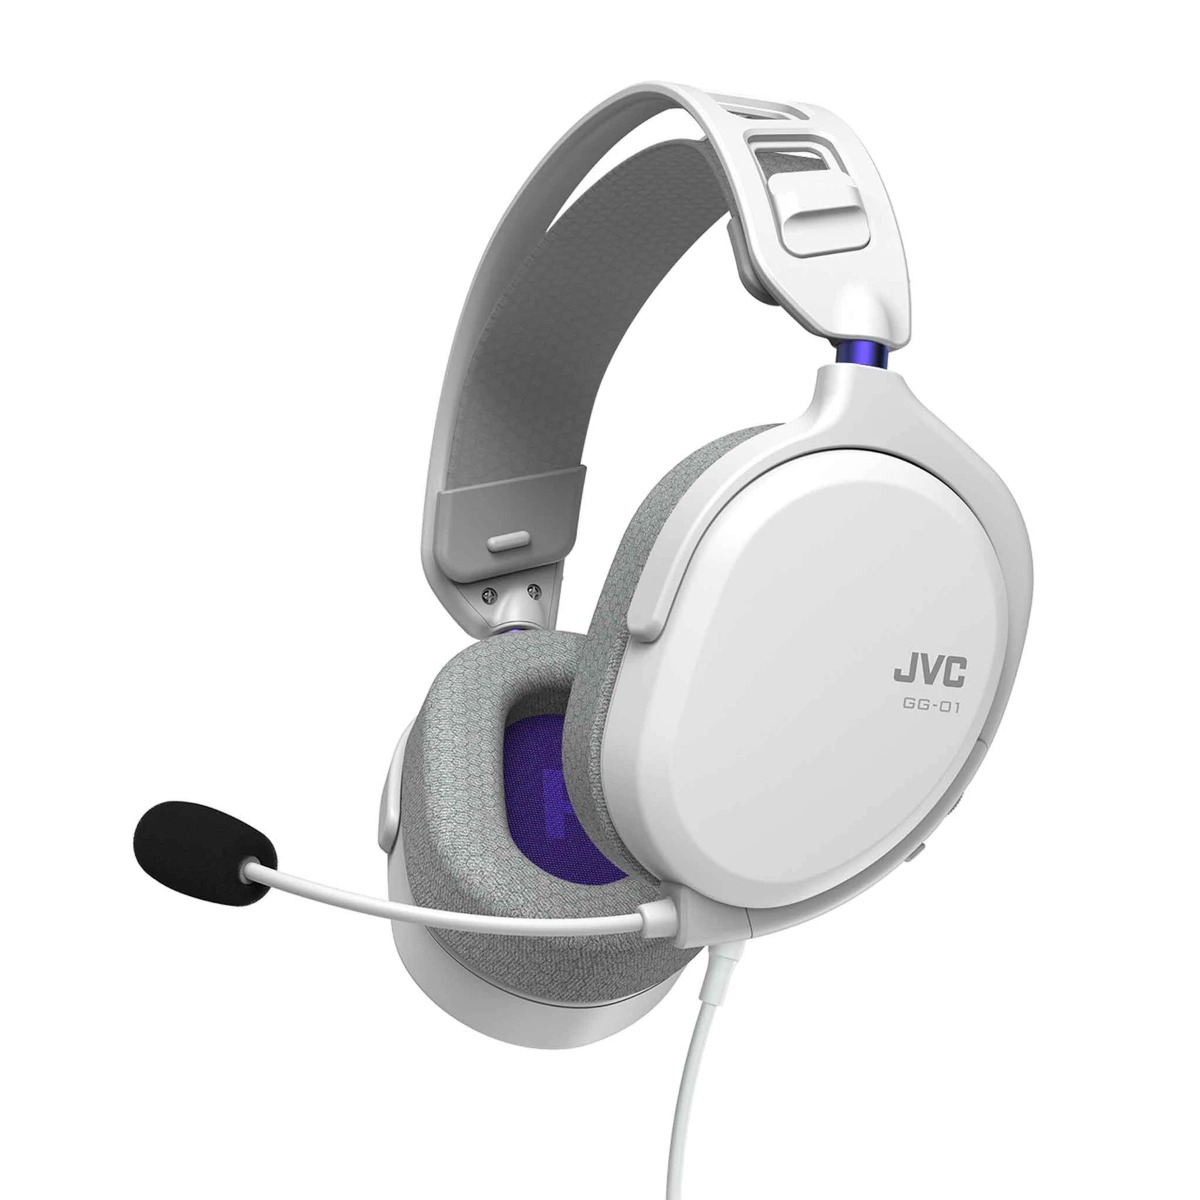 JVC GG-01HQ Gaming slušalice sa jastučićima za uši od meke mreže od memorijske pene za dugo igranje igrica uz savršen zvuk. 